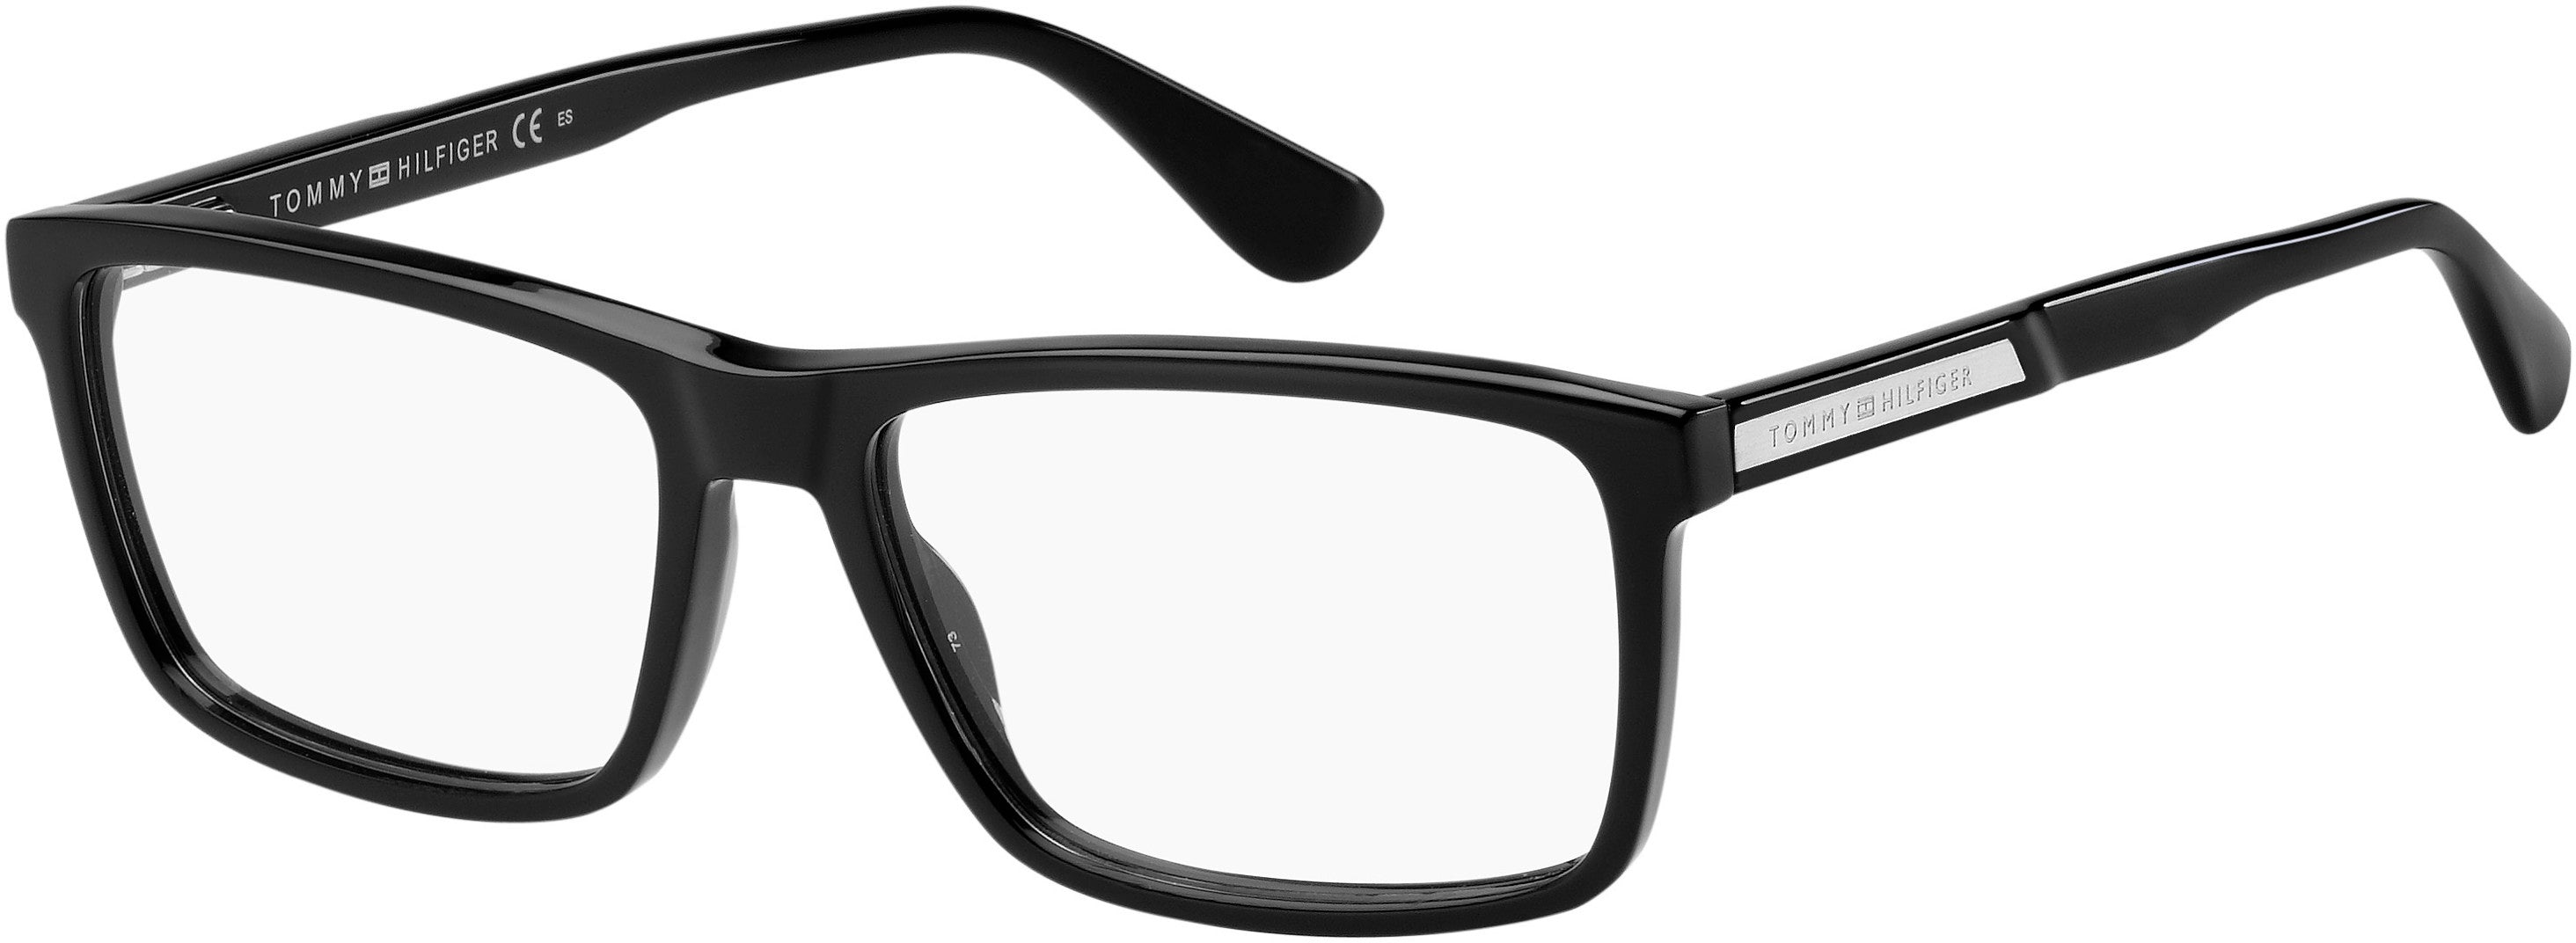 Tommy Hilfiger T. Hilfiger 1549 Rectangular Eyeglasses 0807-0807  Black (00 Demo Lens)